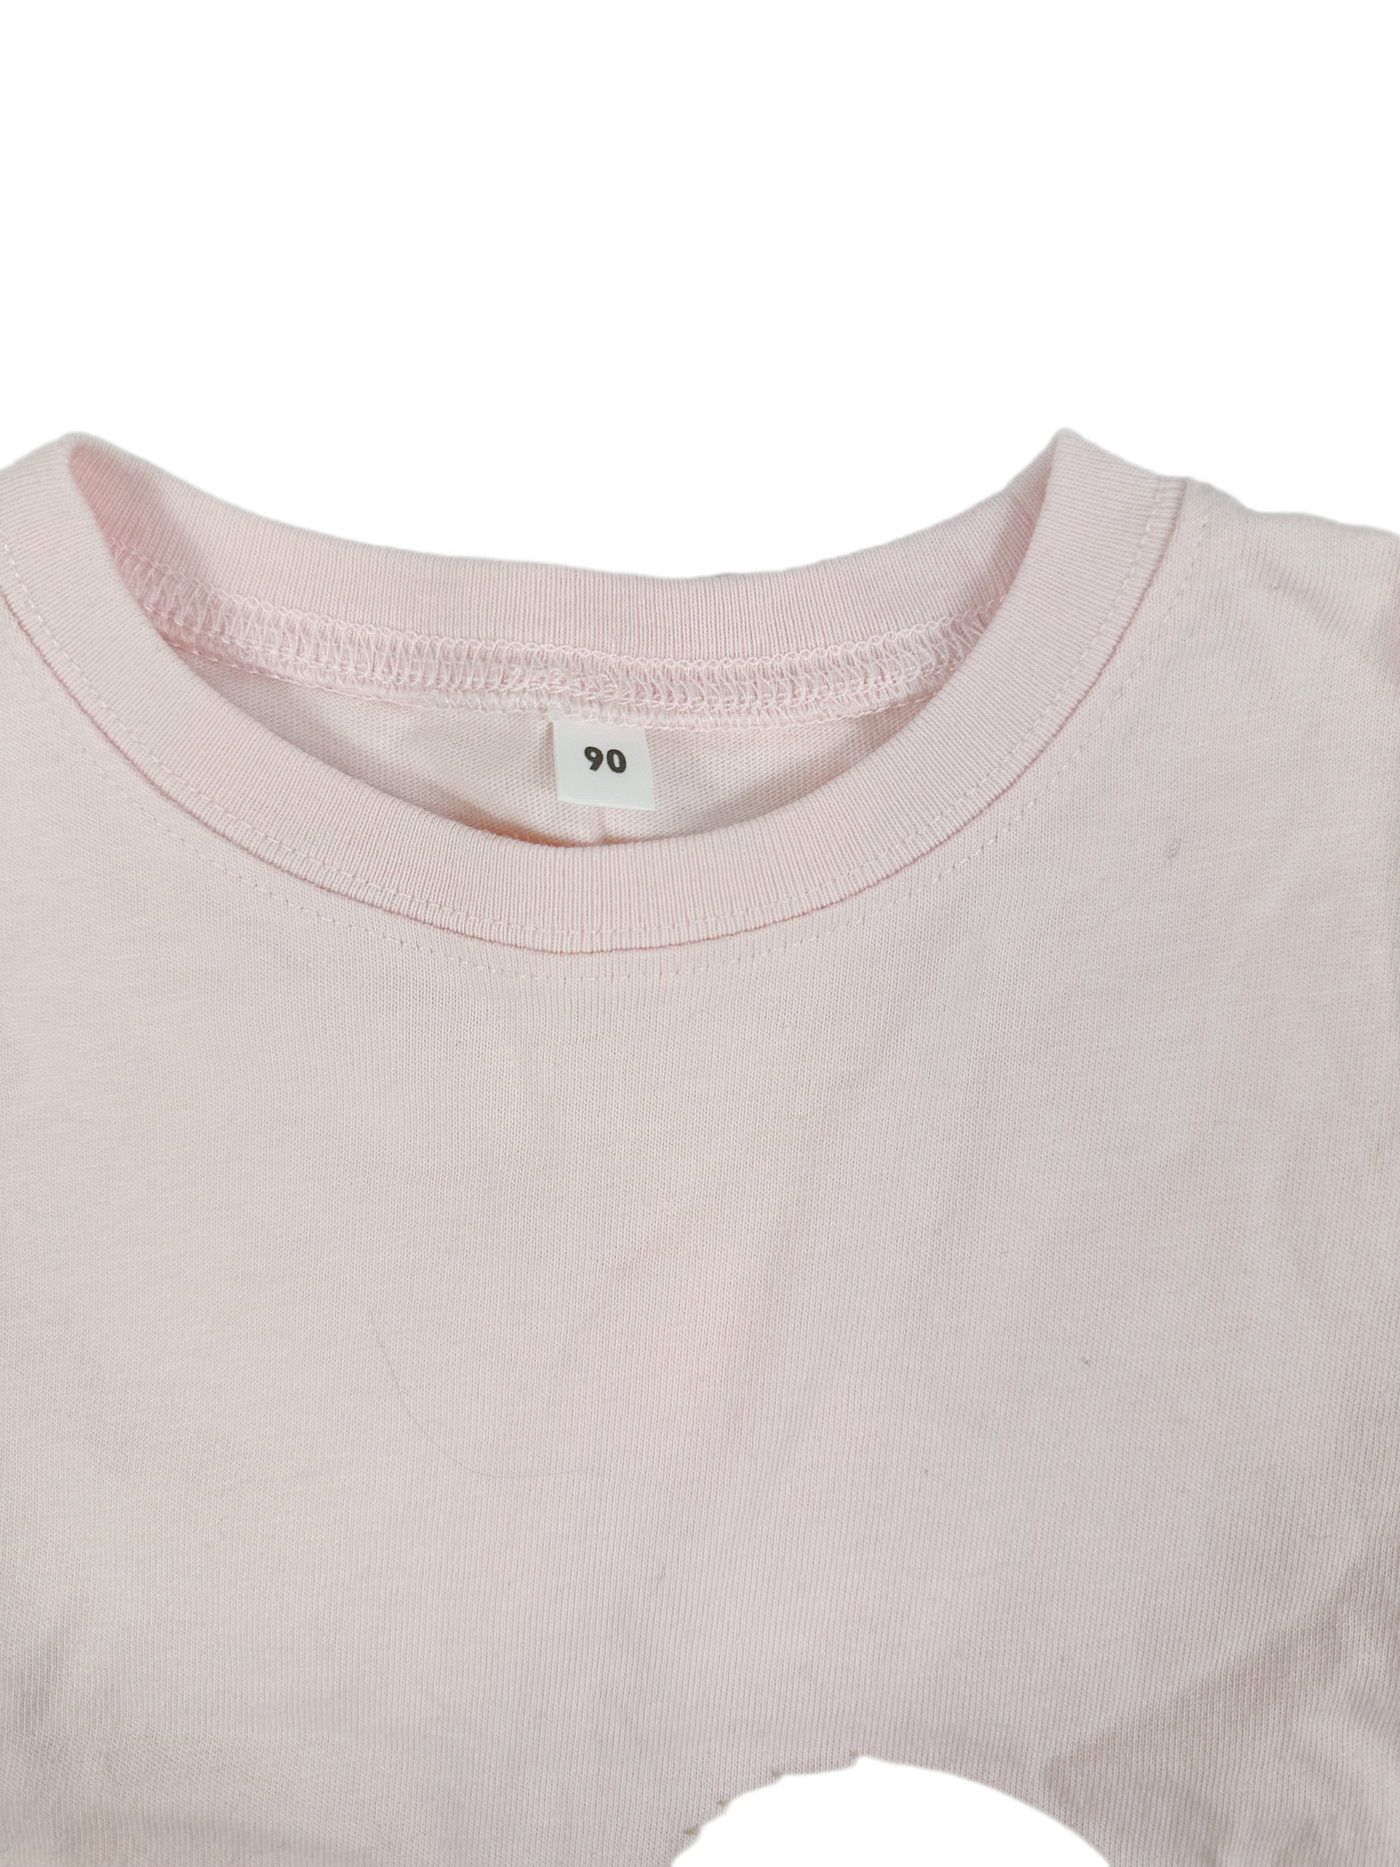 Muji Pink Shirt(3Y)